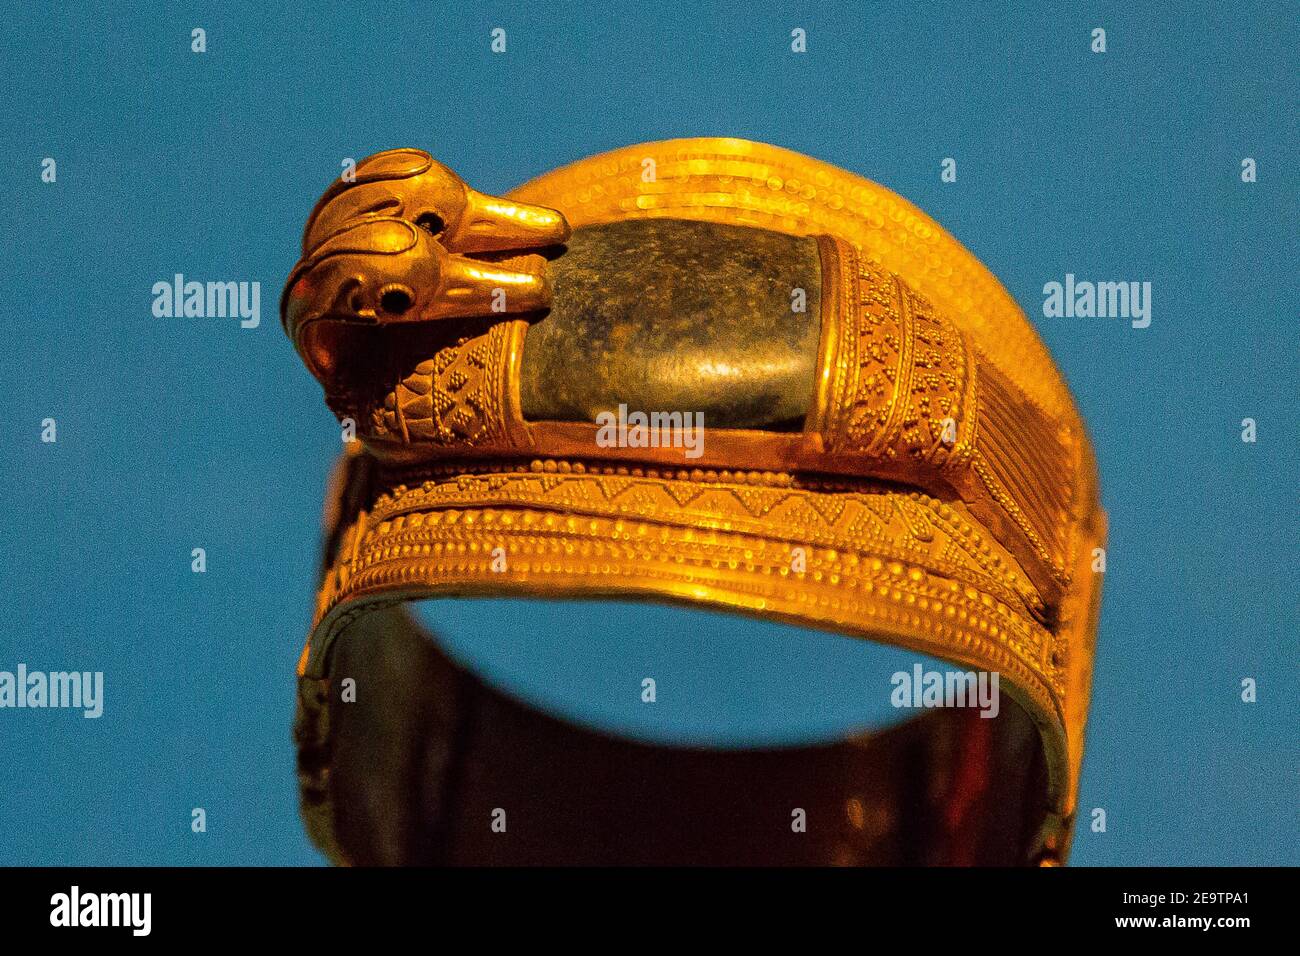 Egipto, el Cairo, el Museo Egipcio, una pulsera que se encuentra en el tesoro de Zagazig (Bubatis), en el Delta Egipcio. Oro y lapis-lazuli, con cabezas de pato. Foto de stock